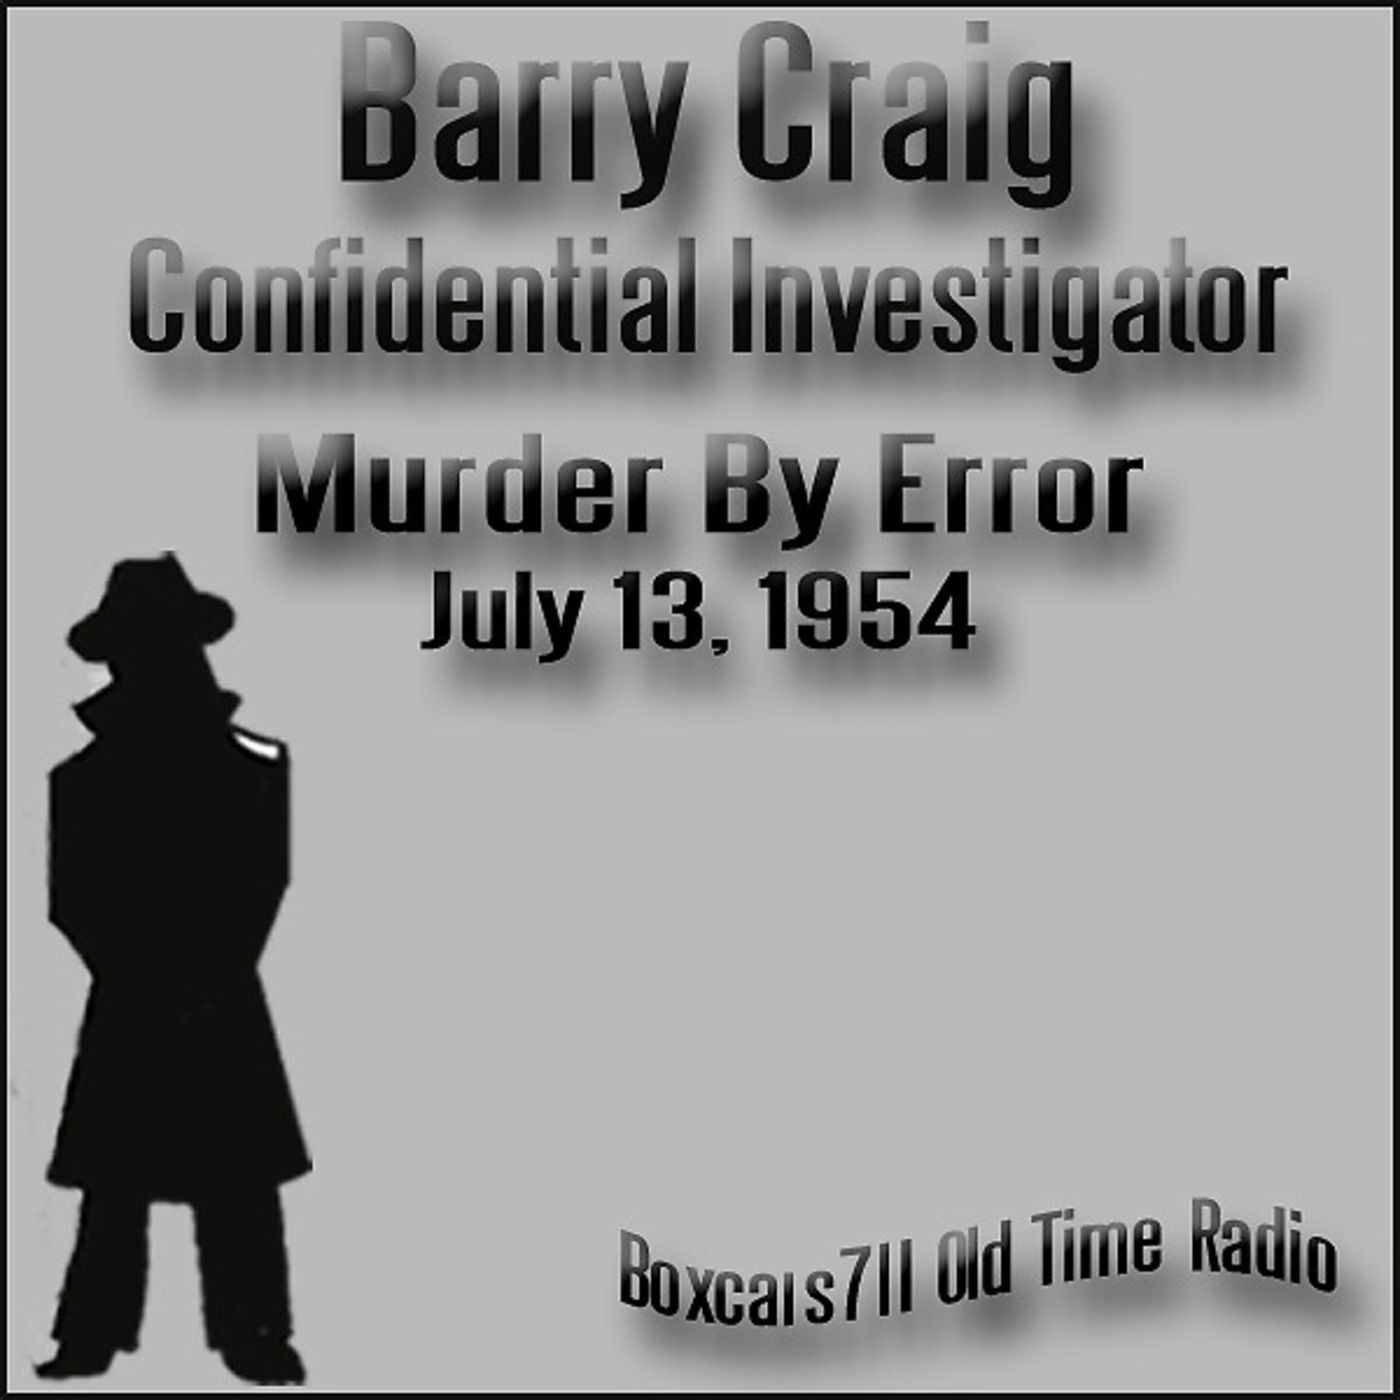 Episode 9578: Barry Craig Confidential Investigator - 